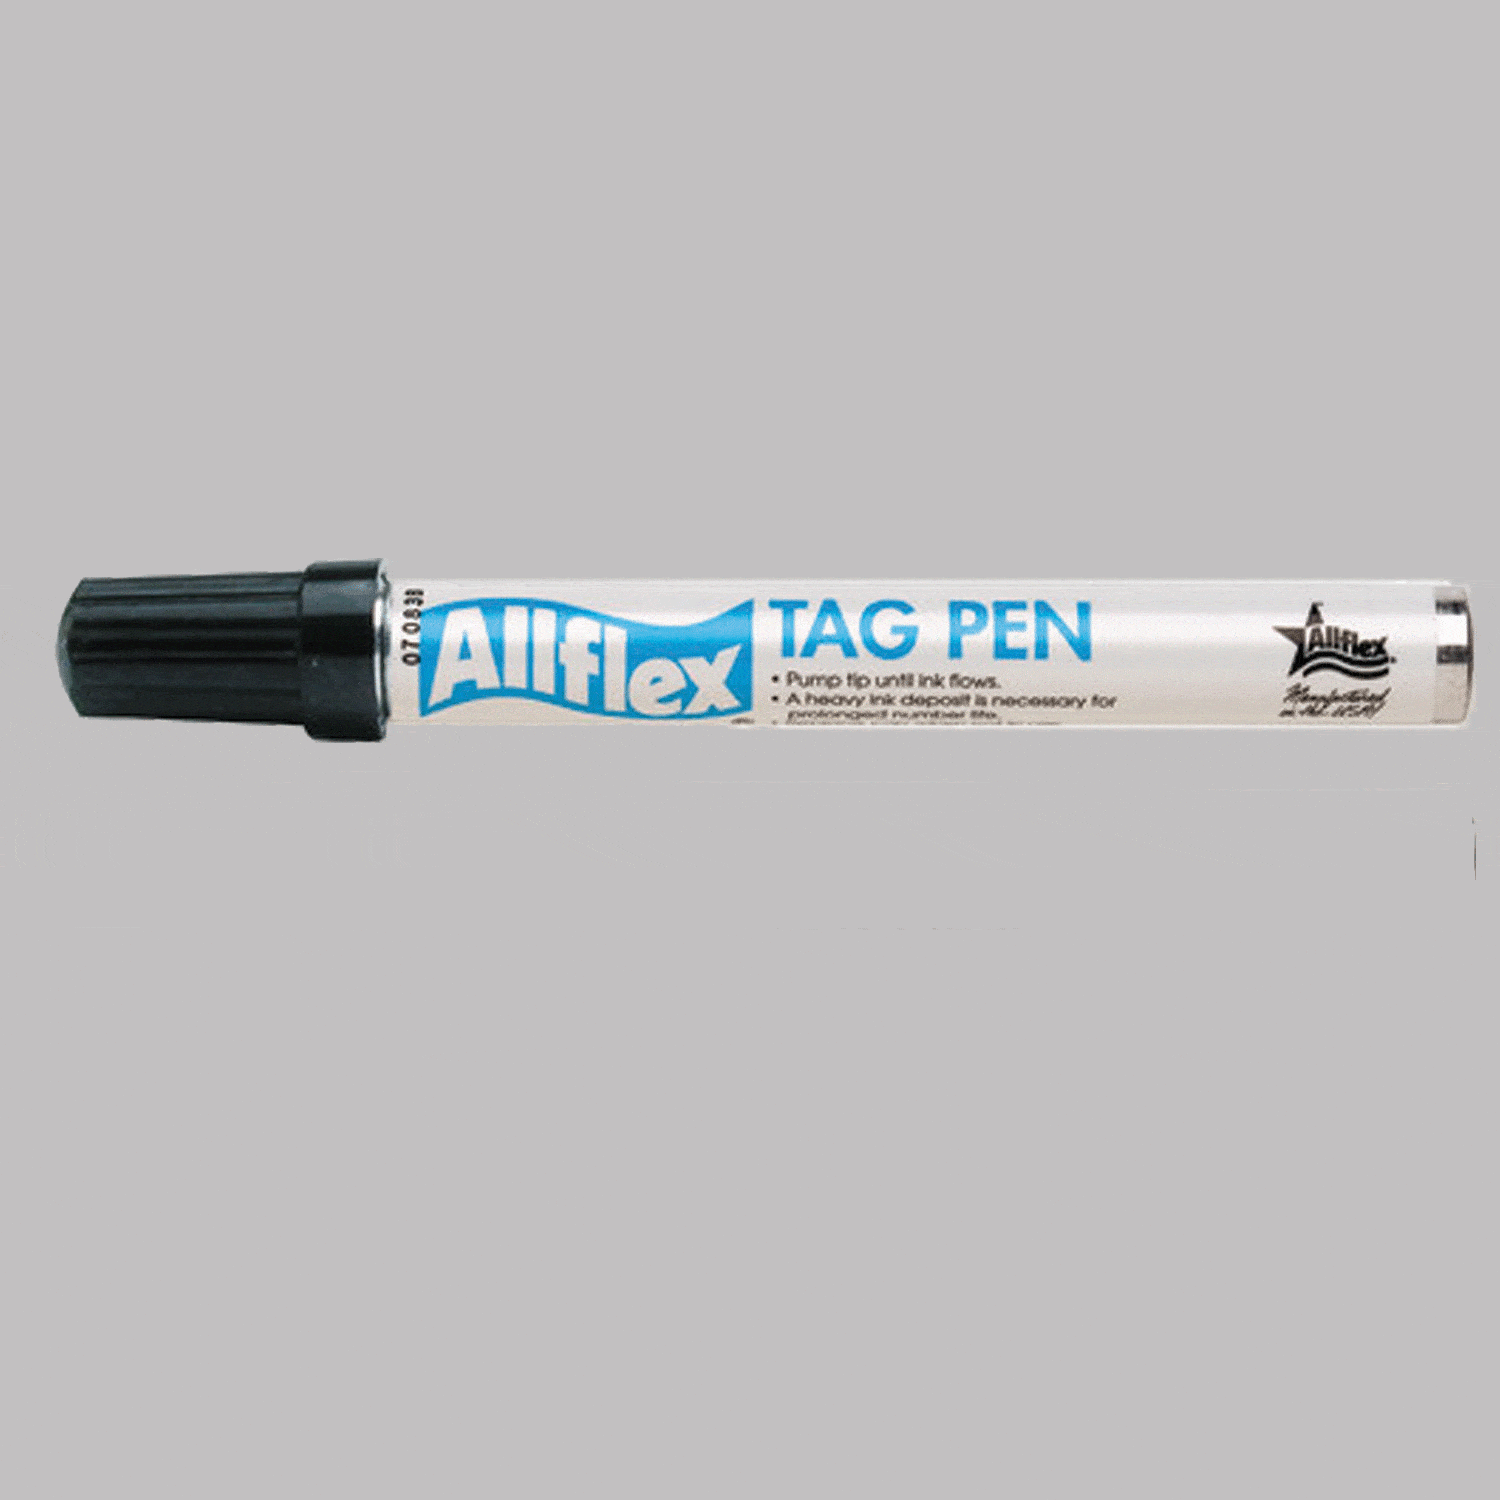 Allflex tag pen Black